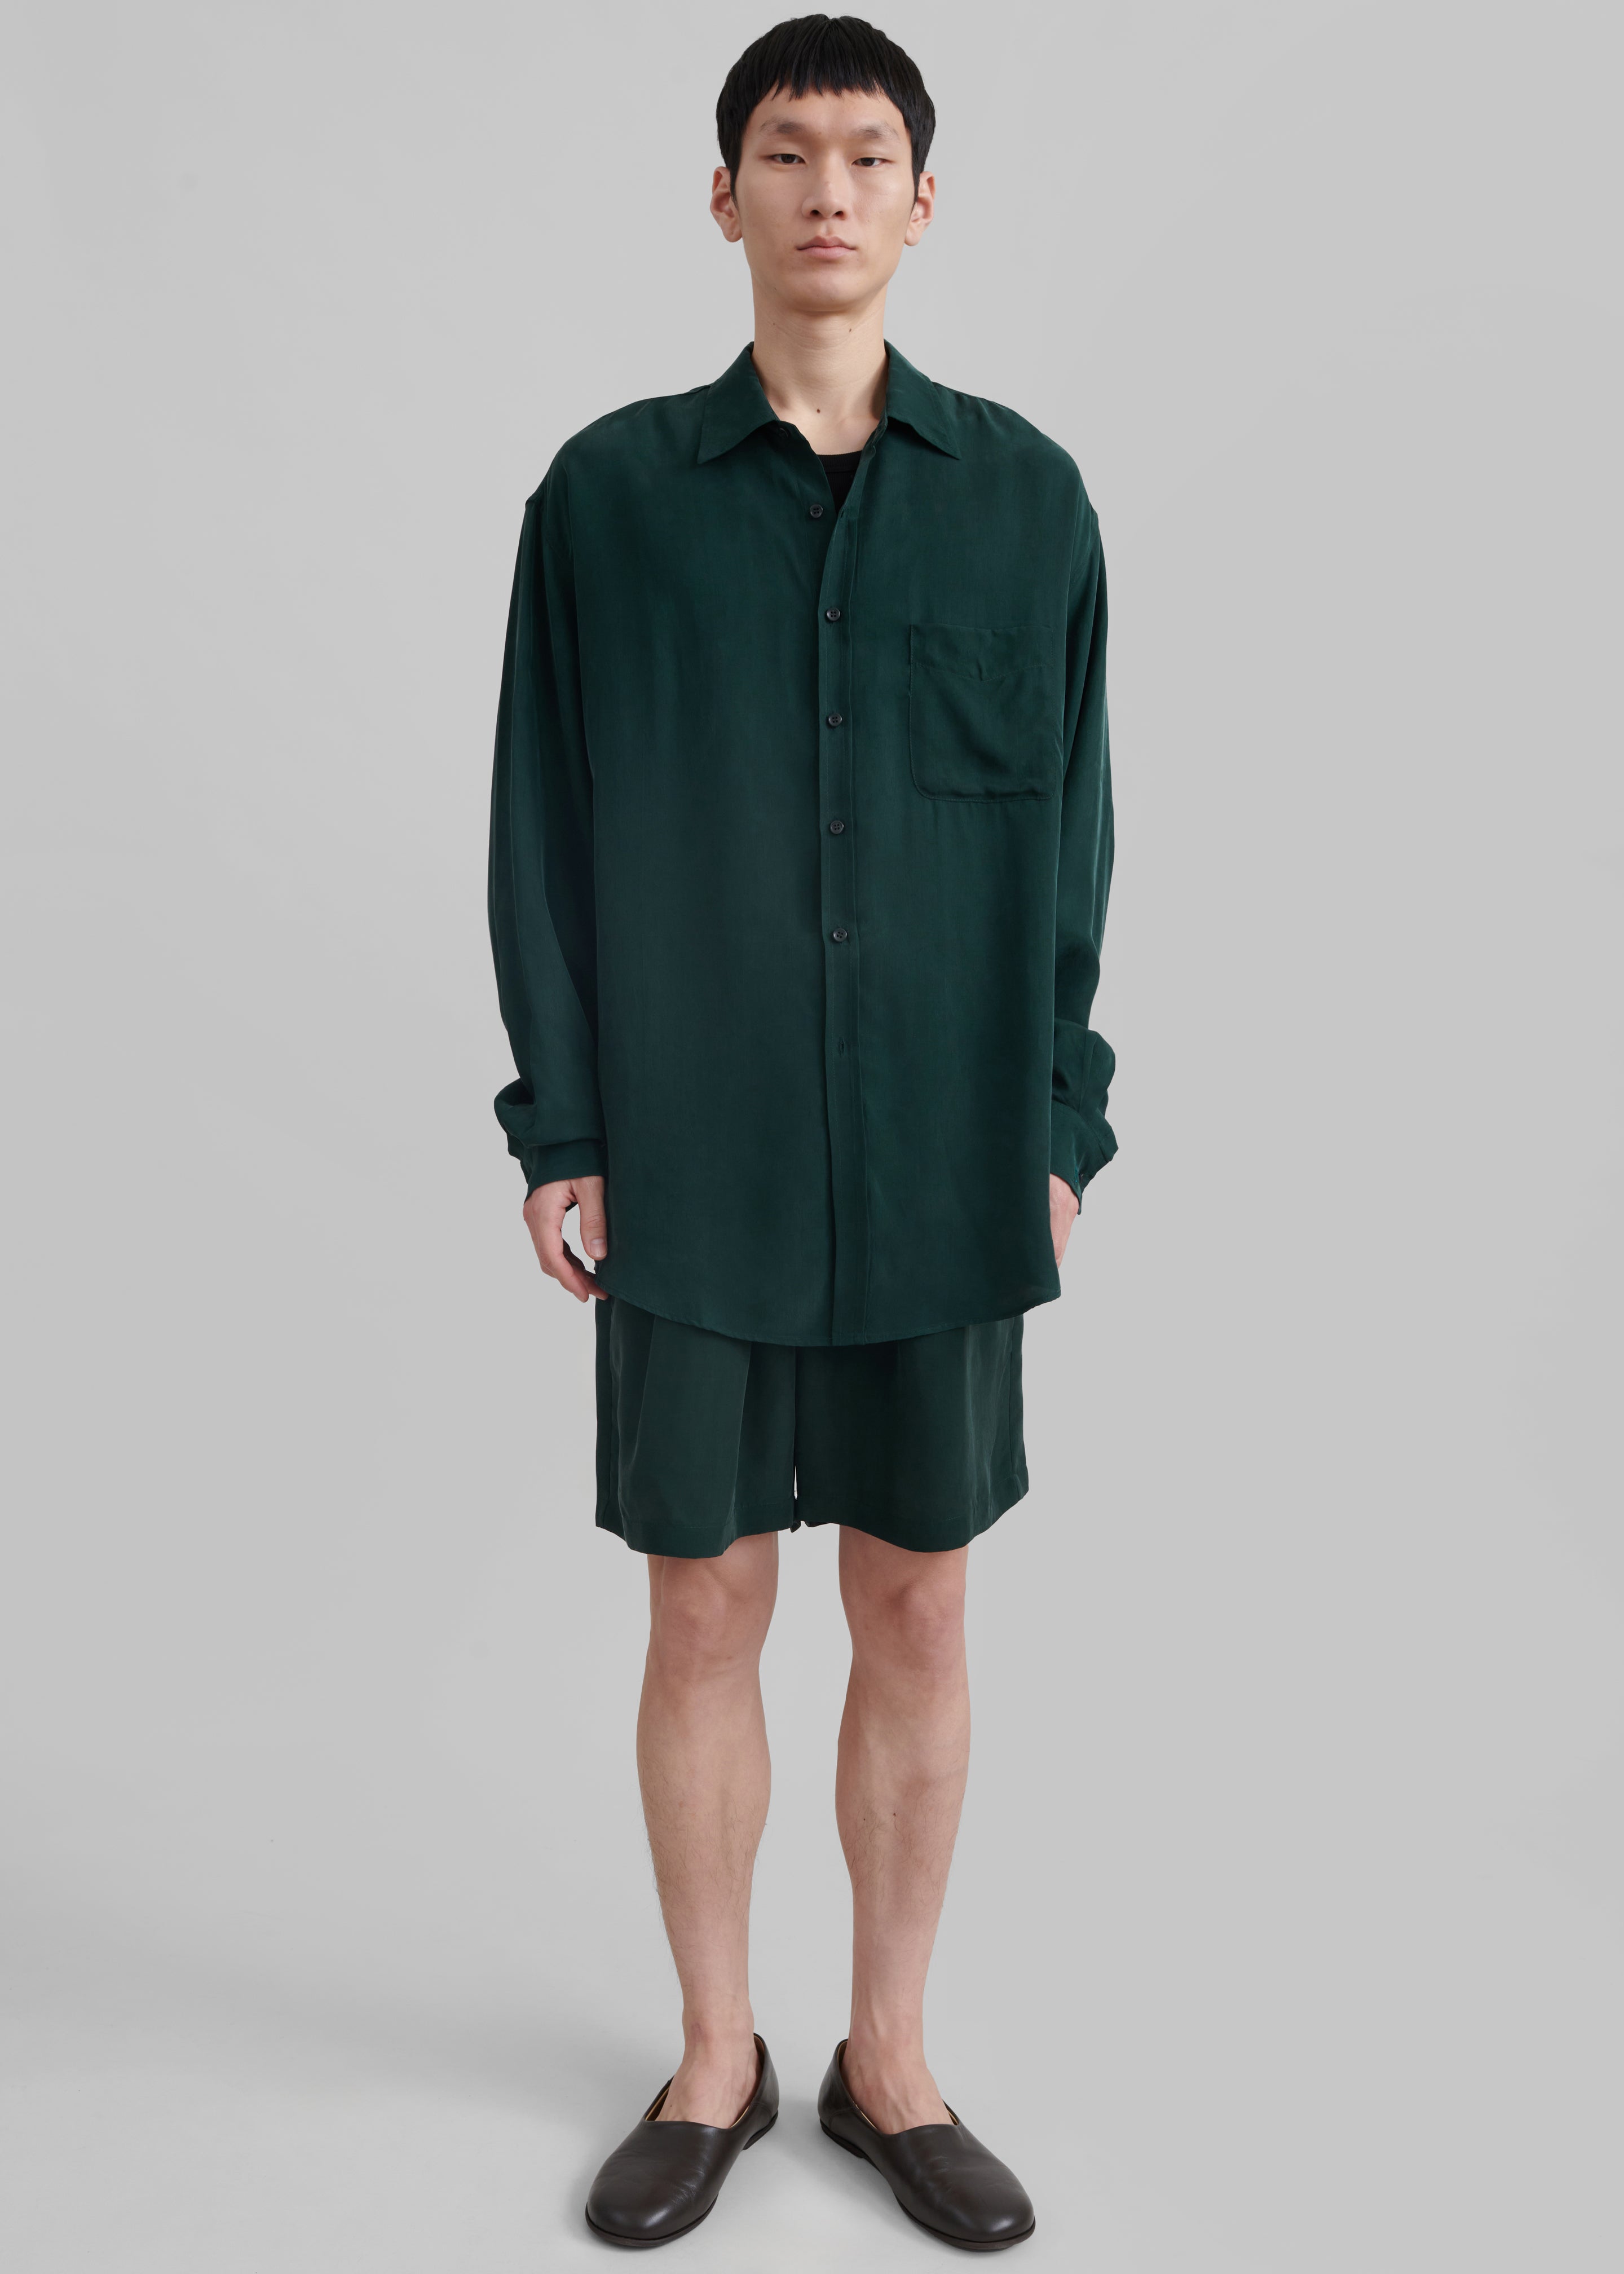 Leland Silky Shirt - Forest Green - 1